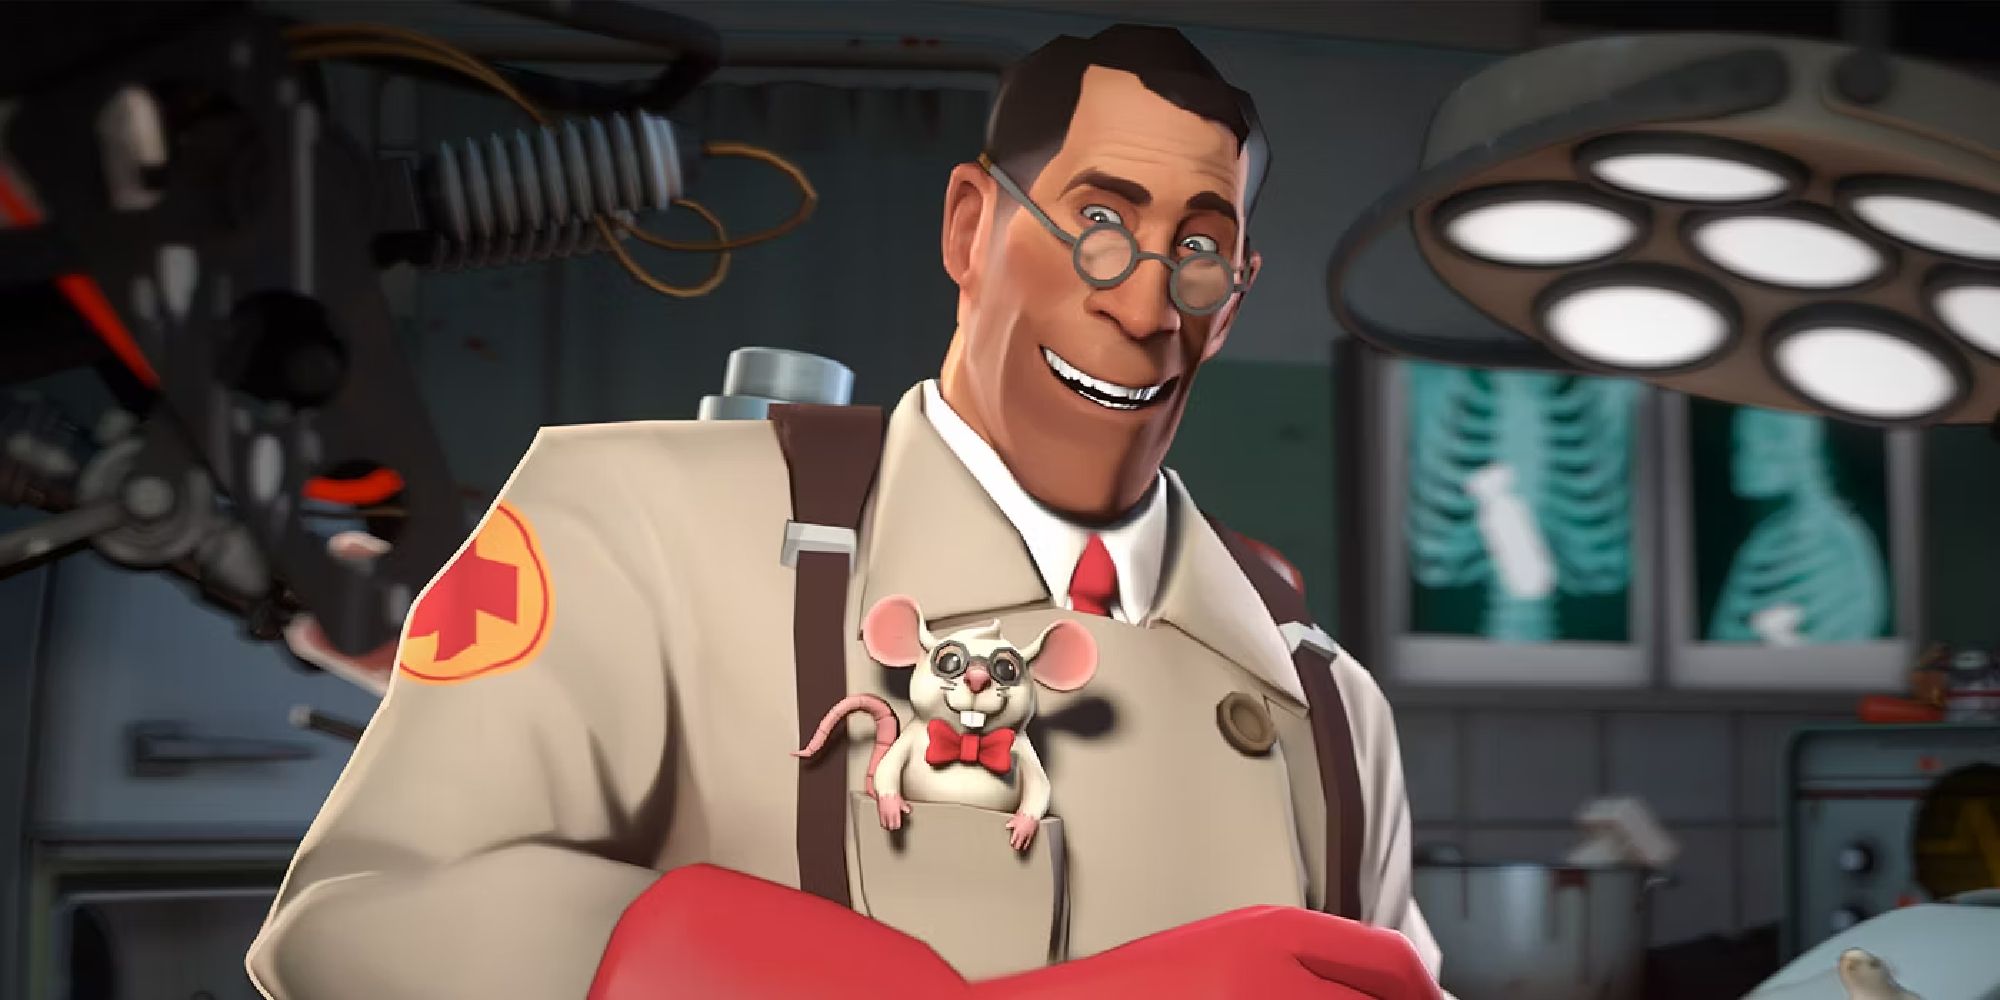 Le Medic de Team Fortress 2 sourit à l'adorable souris dans sa poche de poitrine.